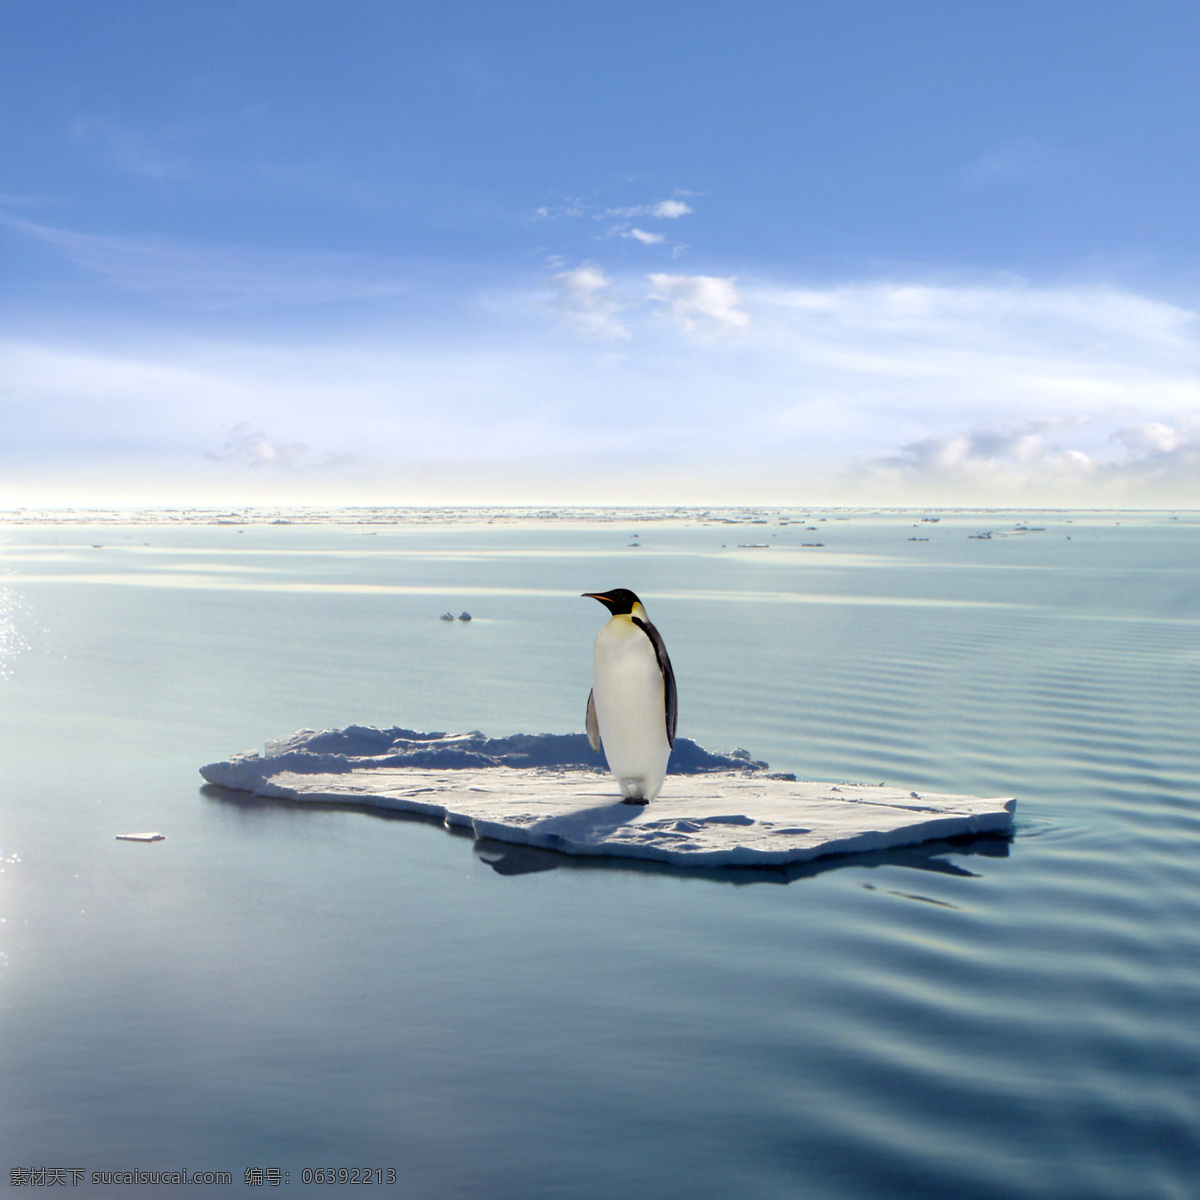 孤独 企鹅 南极 北极 冰天雪地 动物 实用图片 精美图片 印刷适用 高清图片 创意图片 自然景观 自然风景 摄影图库